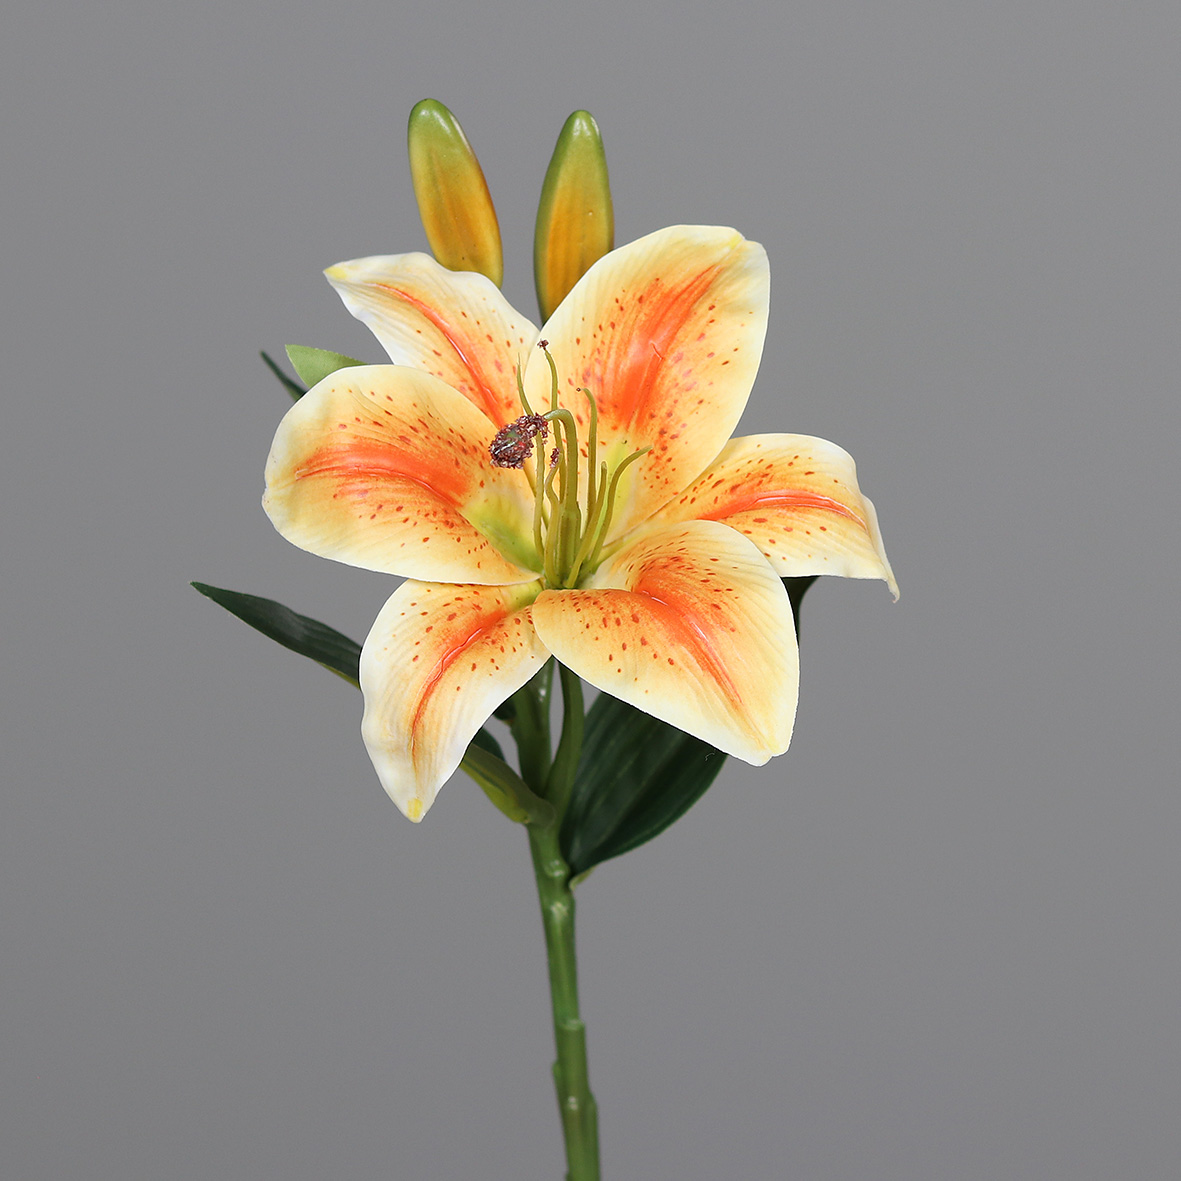 Lilie / Tigerlilie Real Touch 36cm orange DP Kunstblumen künstliche Blumen künstlicher Lilienzweig